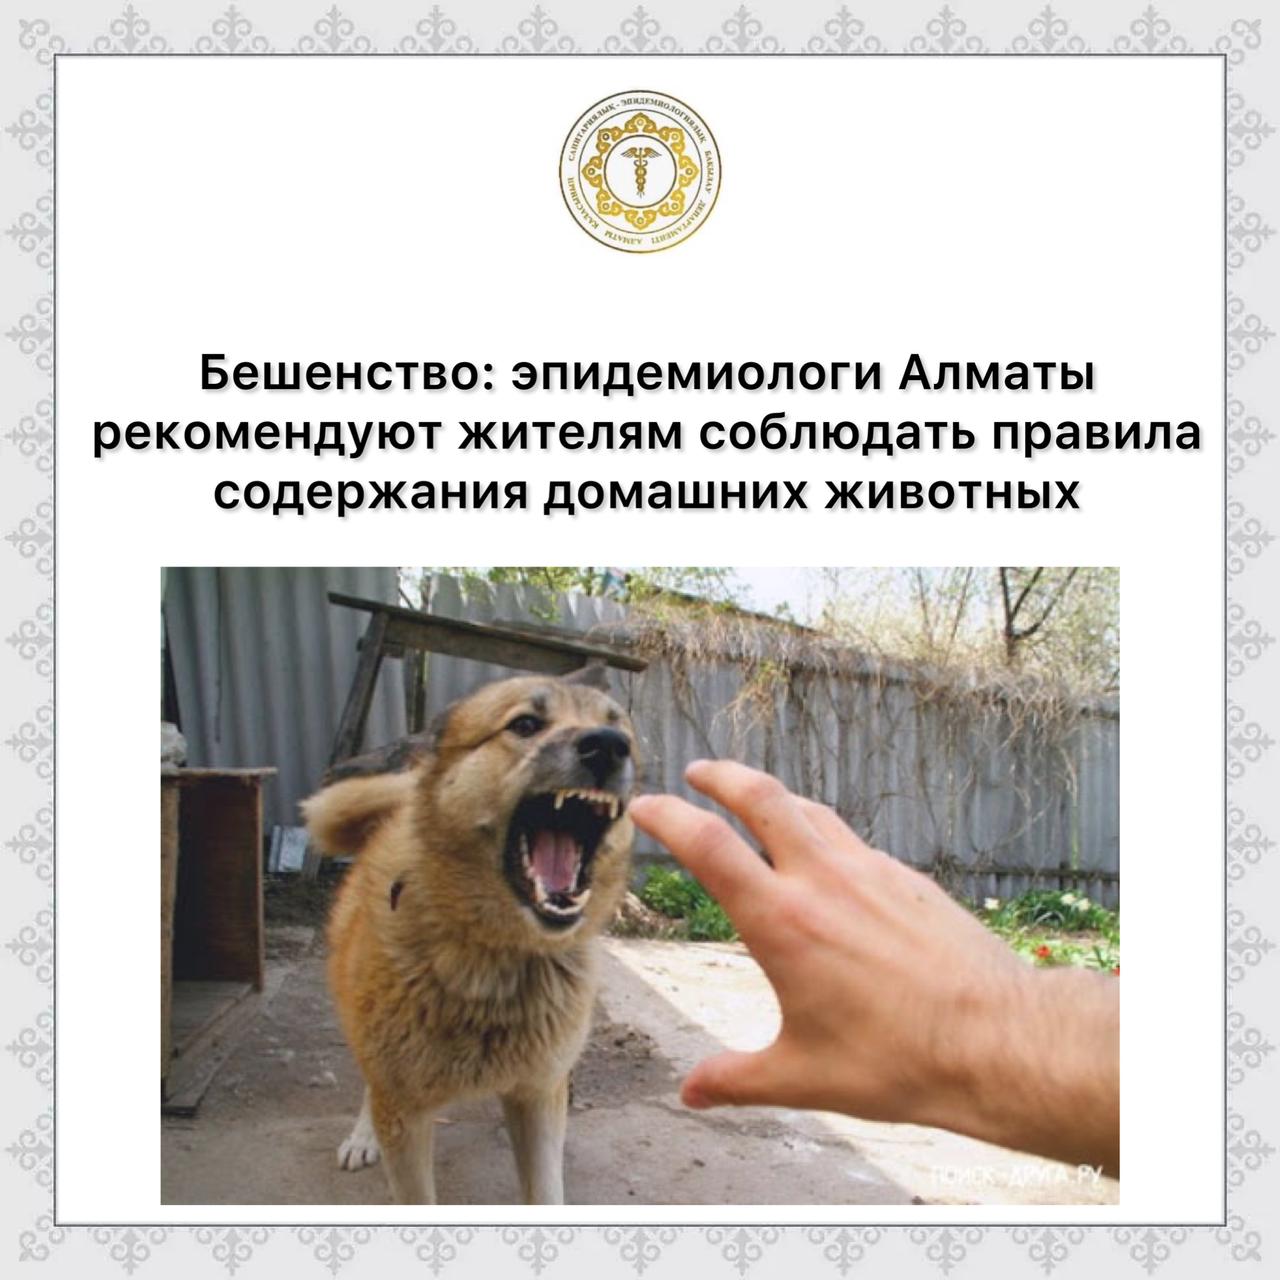 Бешенство: эпидемиологи  Алматы рекомендуют жителям соблюдать правила содержания домашних животных